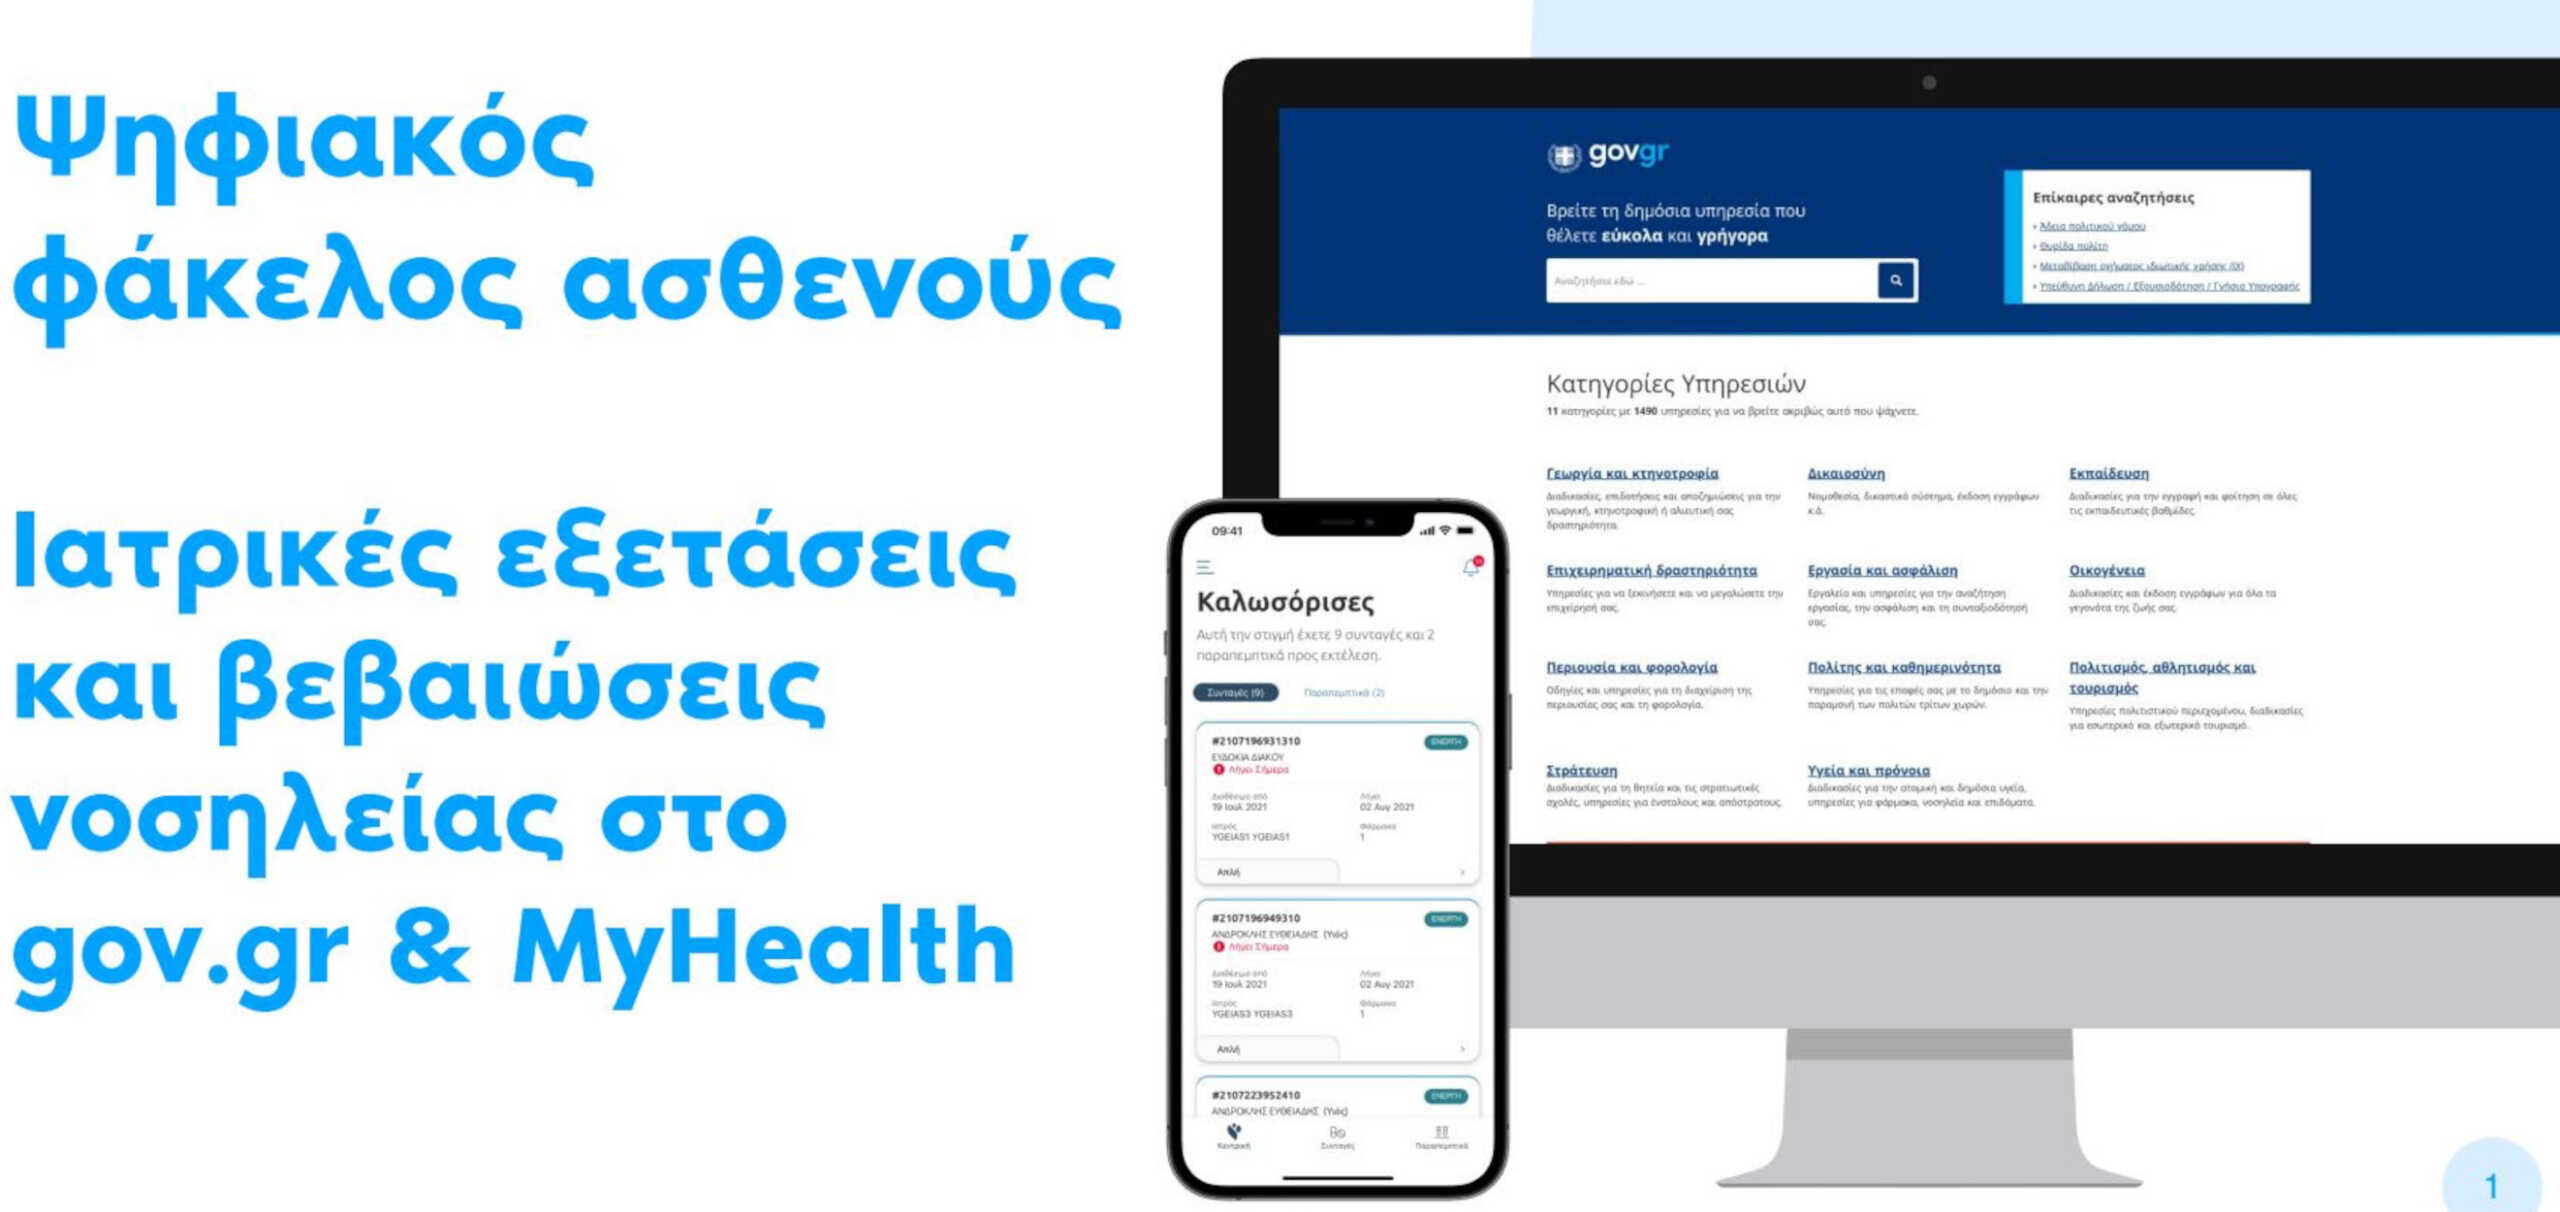 Ψηφιακός φάκελος αθενούς στο gov.gr: Ιατρικές εξετάσεις και βεβαιώσεις νοσηλείας μέσω του myHealth